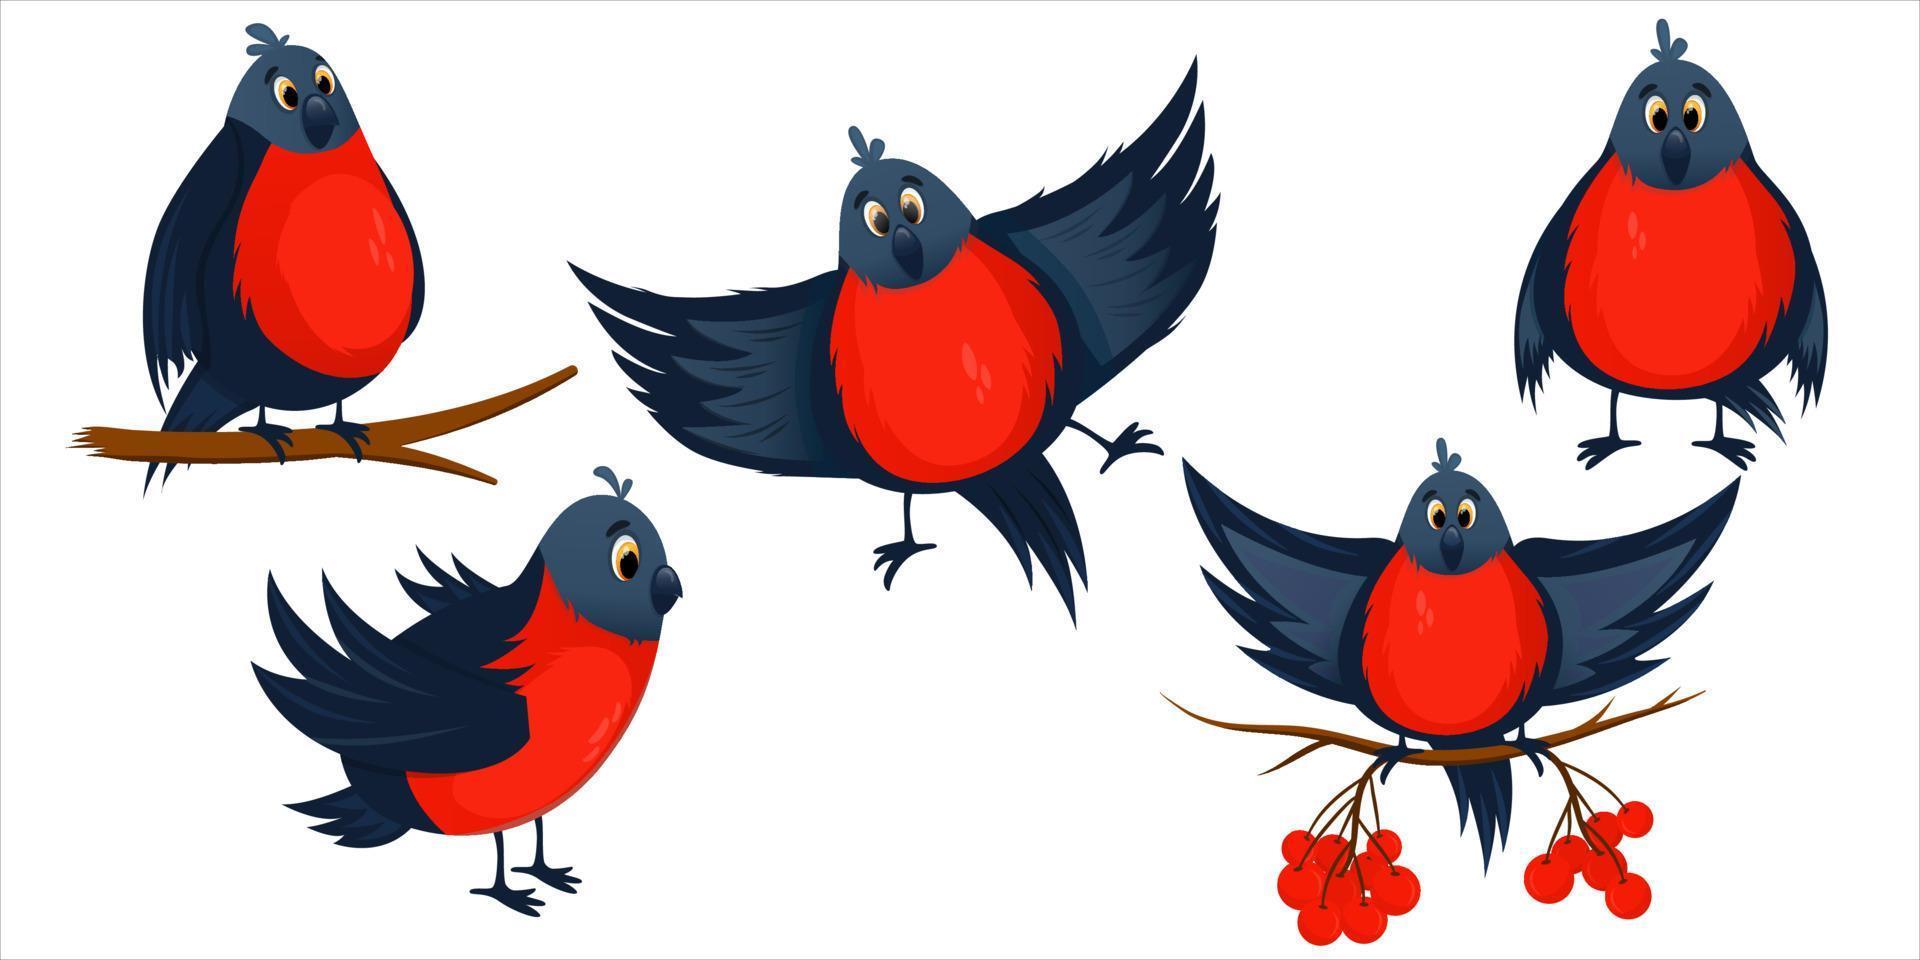 röd domherre som tecknad fågel isolerade. rönnbär och trädgrenar med fåglar. ljusa vinterdomherrar i flykt och sittande. vinterfågelkaraktär. tecknad vektorillustration vektor